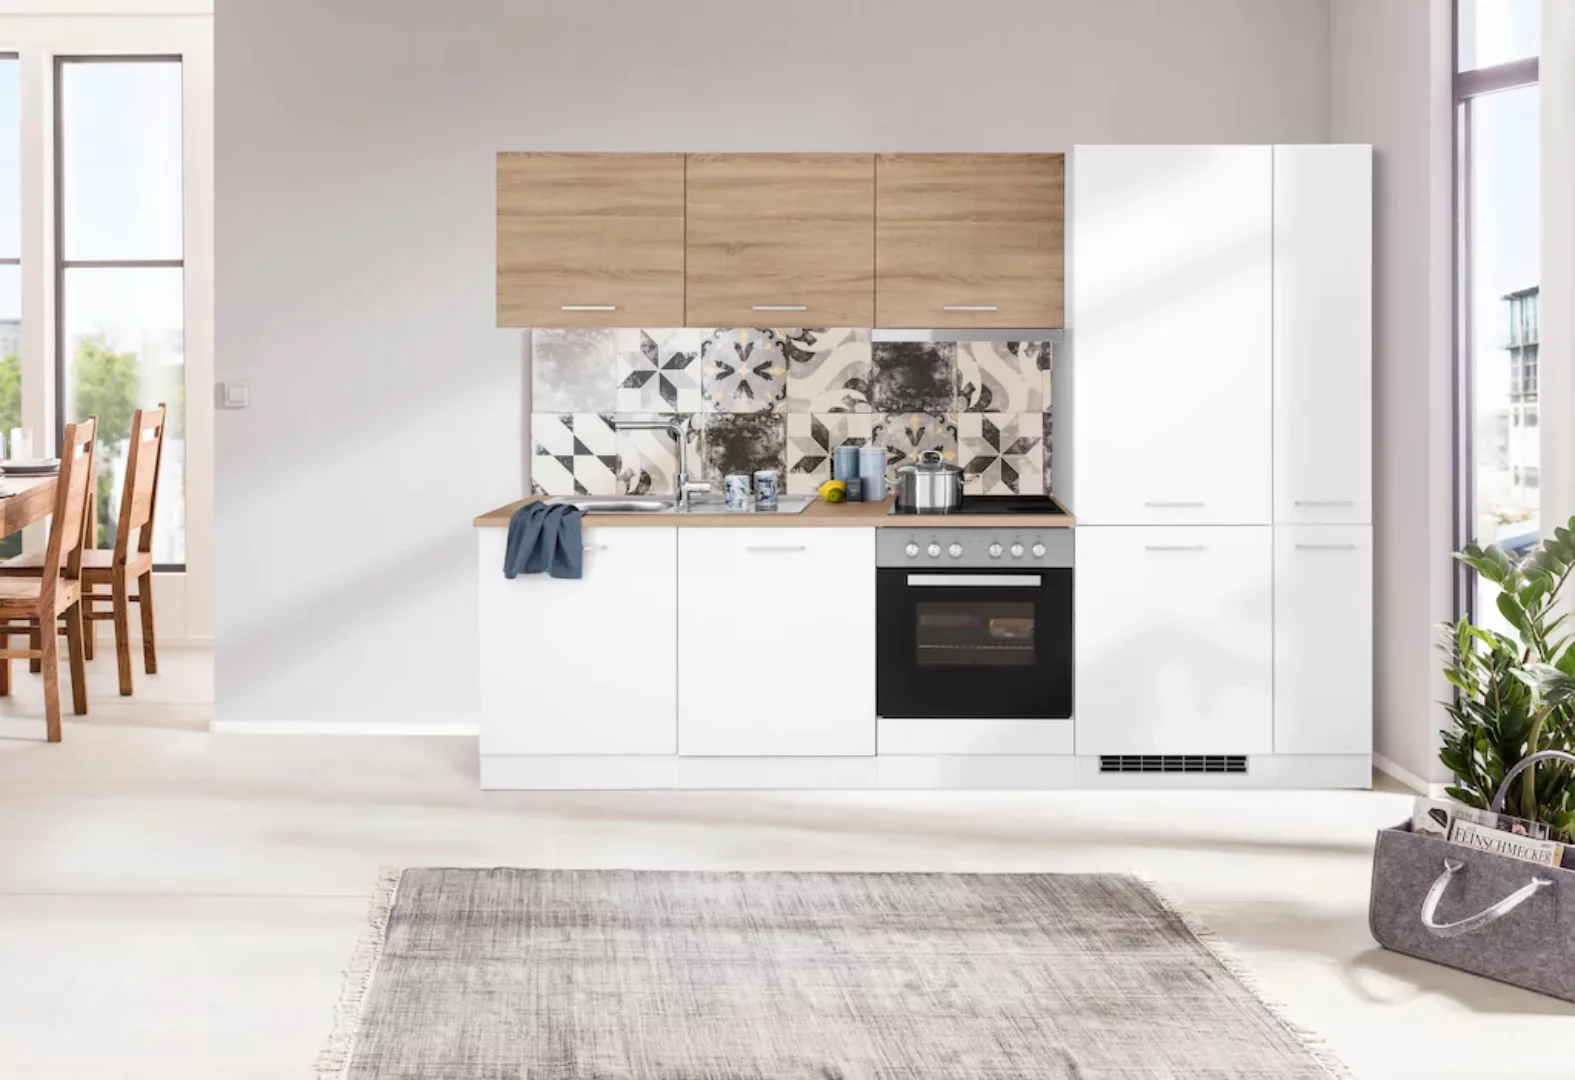 HELD MÖBEL Küchenzeile "Visby", mit E-Geräte, 270 cm, inkl. Kühl/Gefrierkom günstig online kaufen